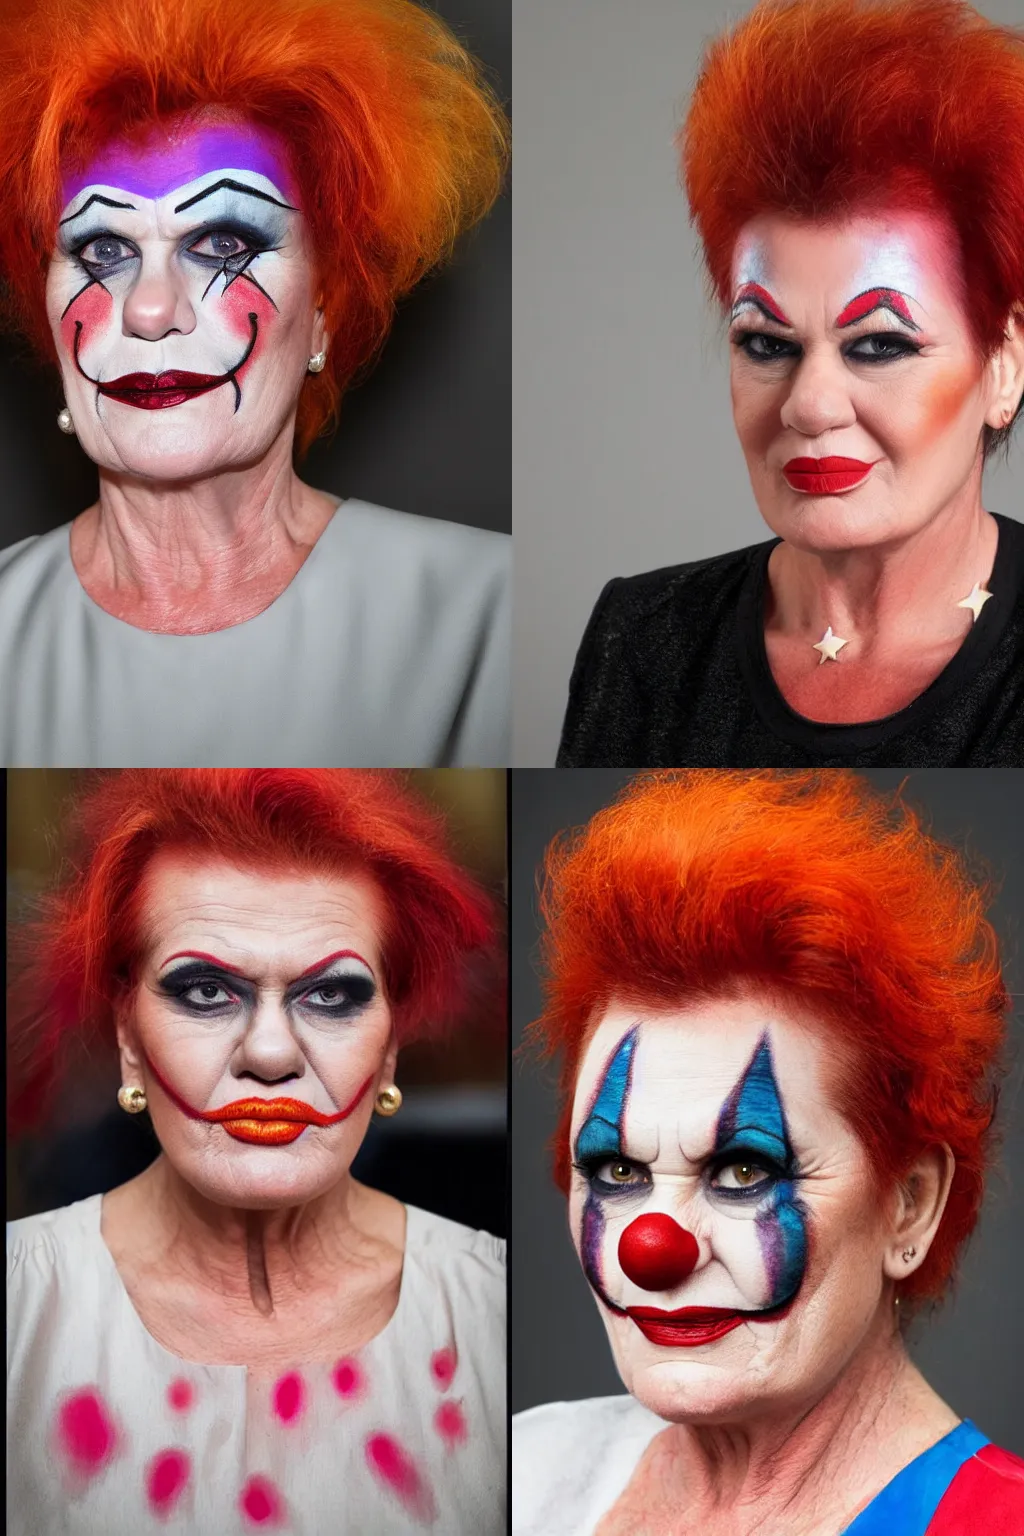 Prompt: Photograph of Pauline Hanson wearing clown makeup, portrait photograph